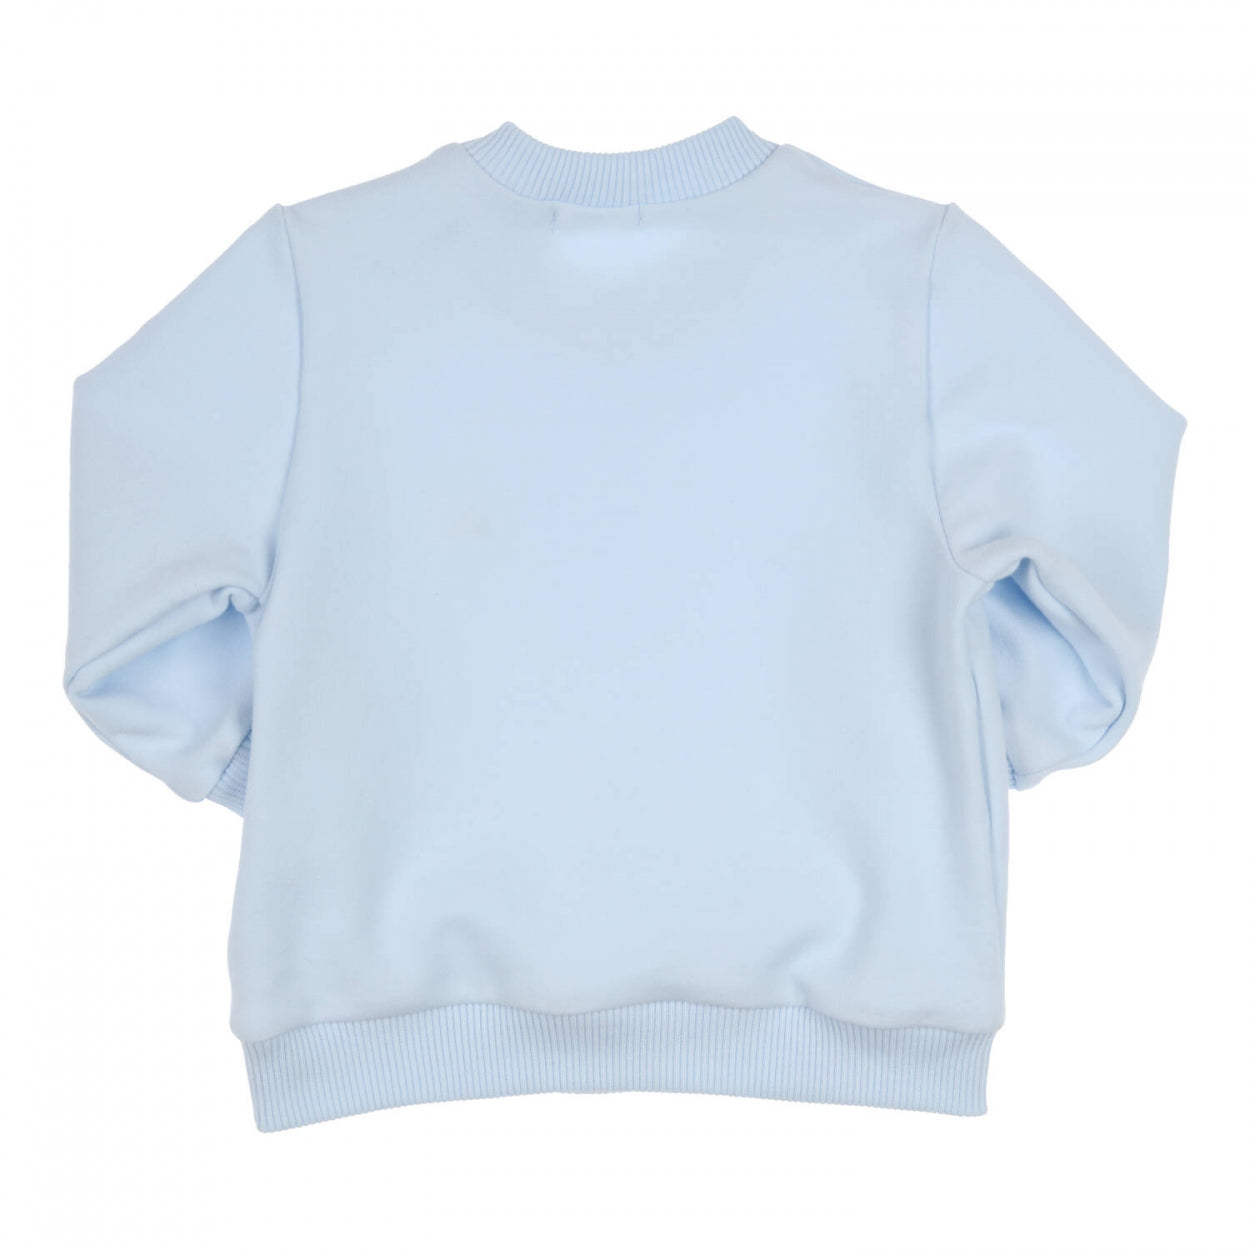 Jongens Sweater Carbon van Gymp in de kleur Light Blue in maat 86.